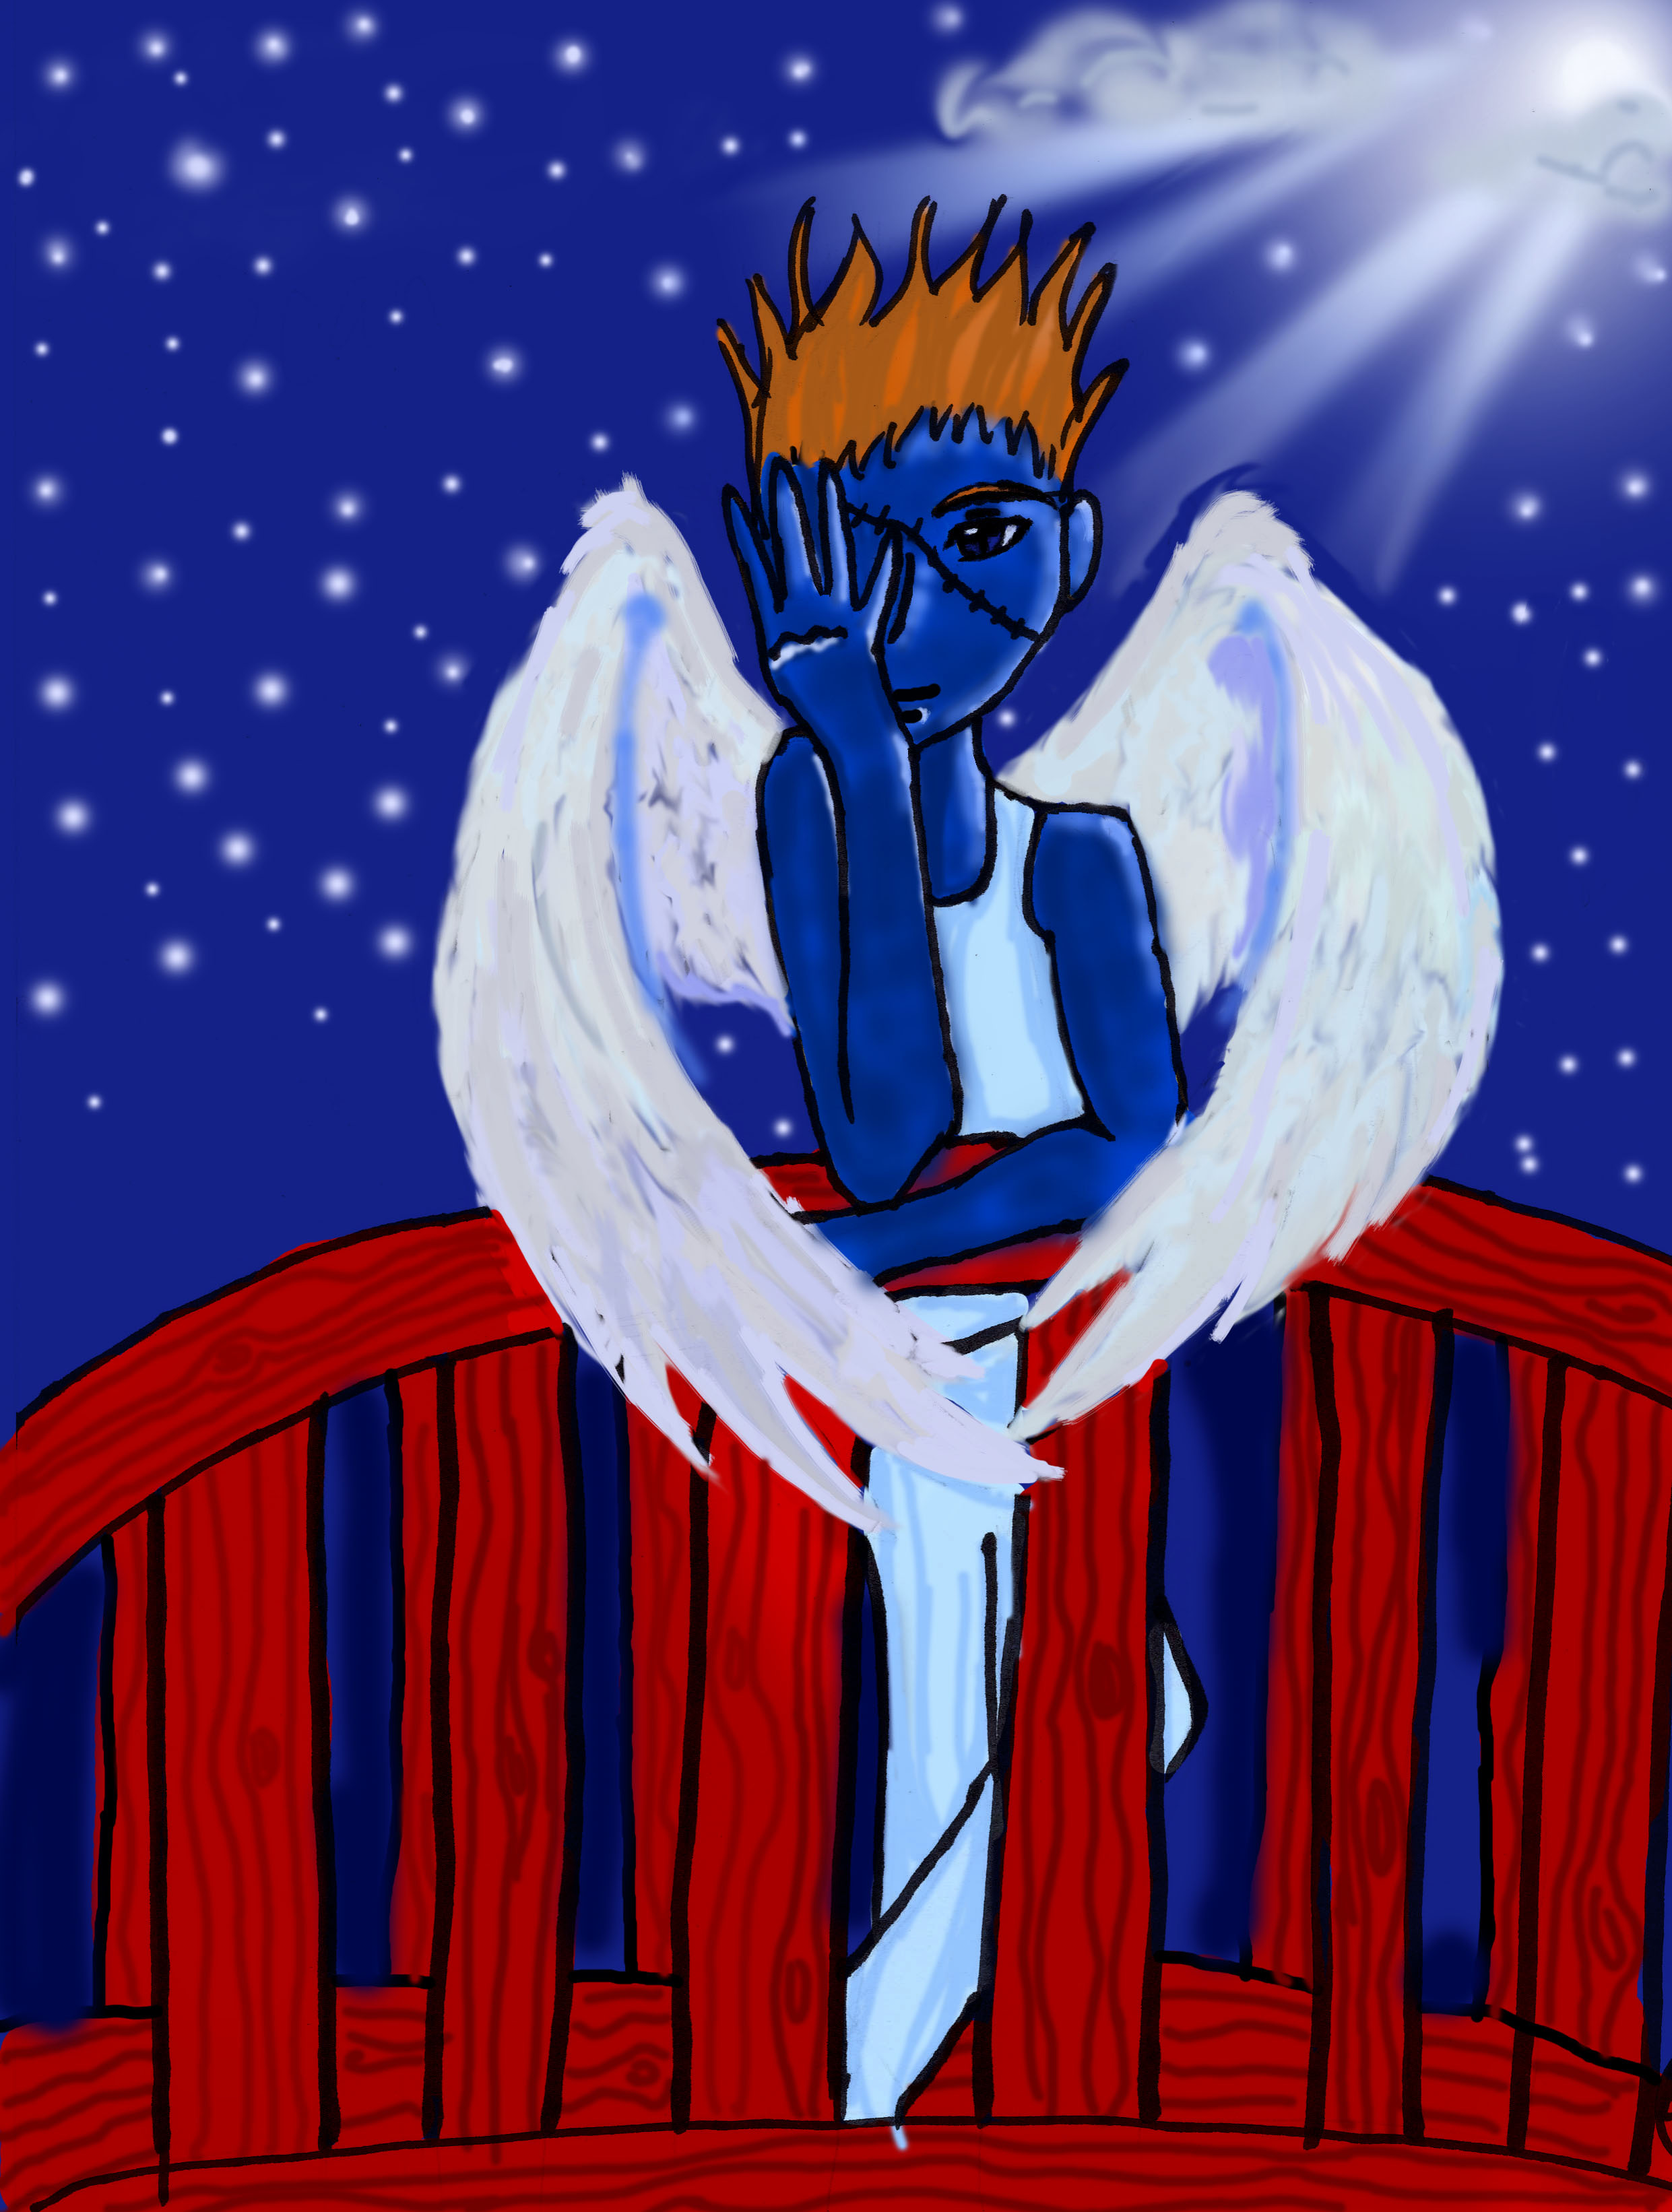 Sad Angel by Hikkikomorikid